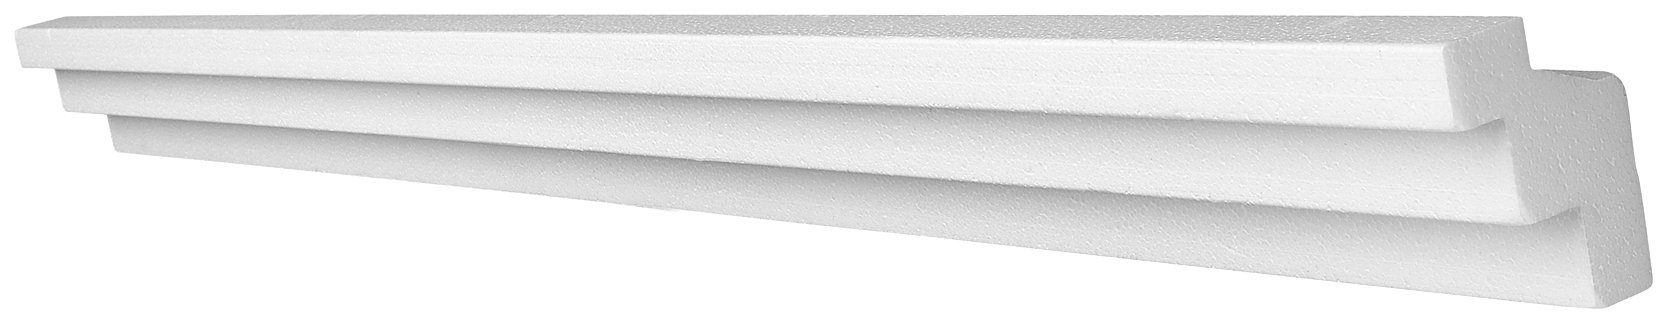 Decoflair Deckenleiste Zierleiste D0 4x2 Meter, kleben, Extrudiertes  Polystyrol (XPS), Set, 4-St., qualitätvolles und widerstandsfähiges Produkt